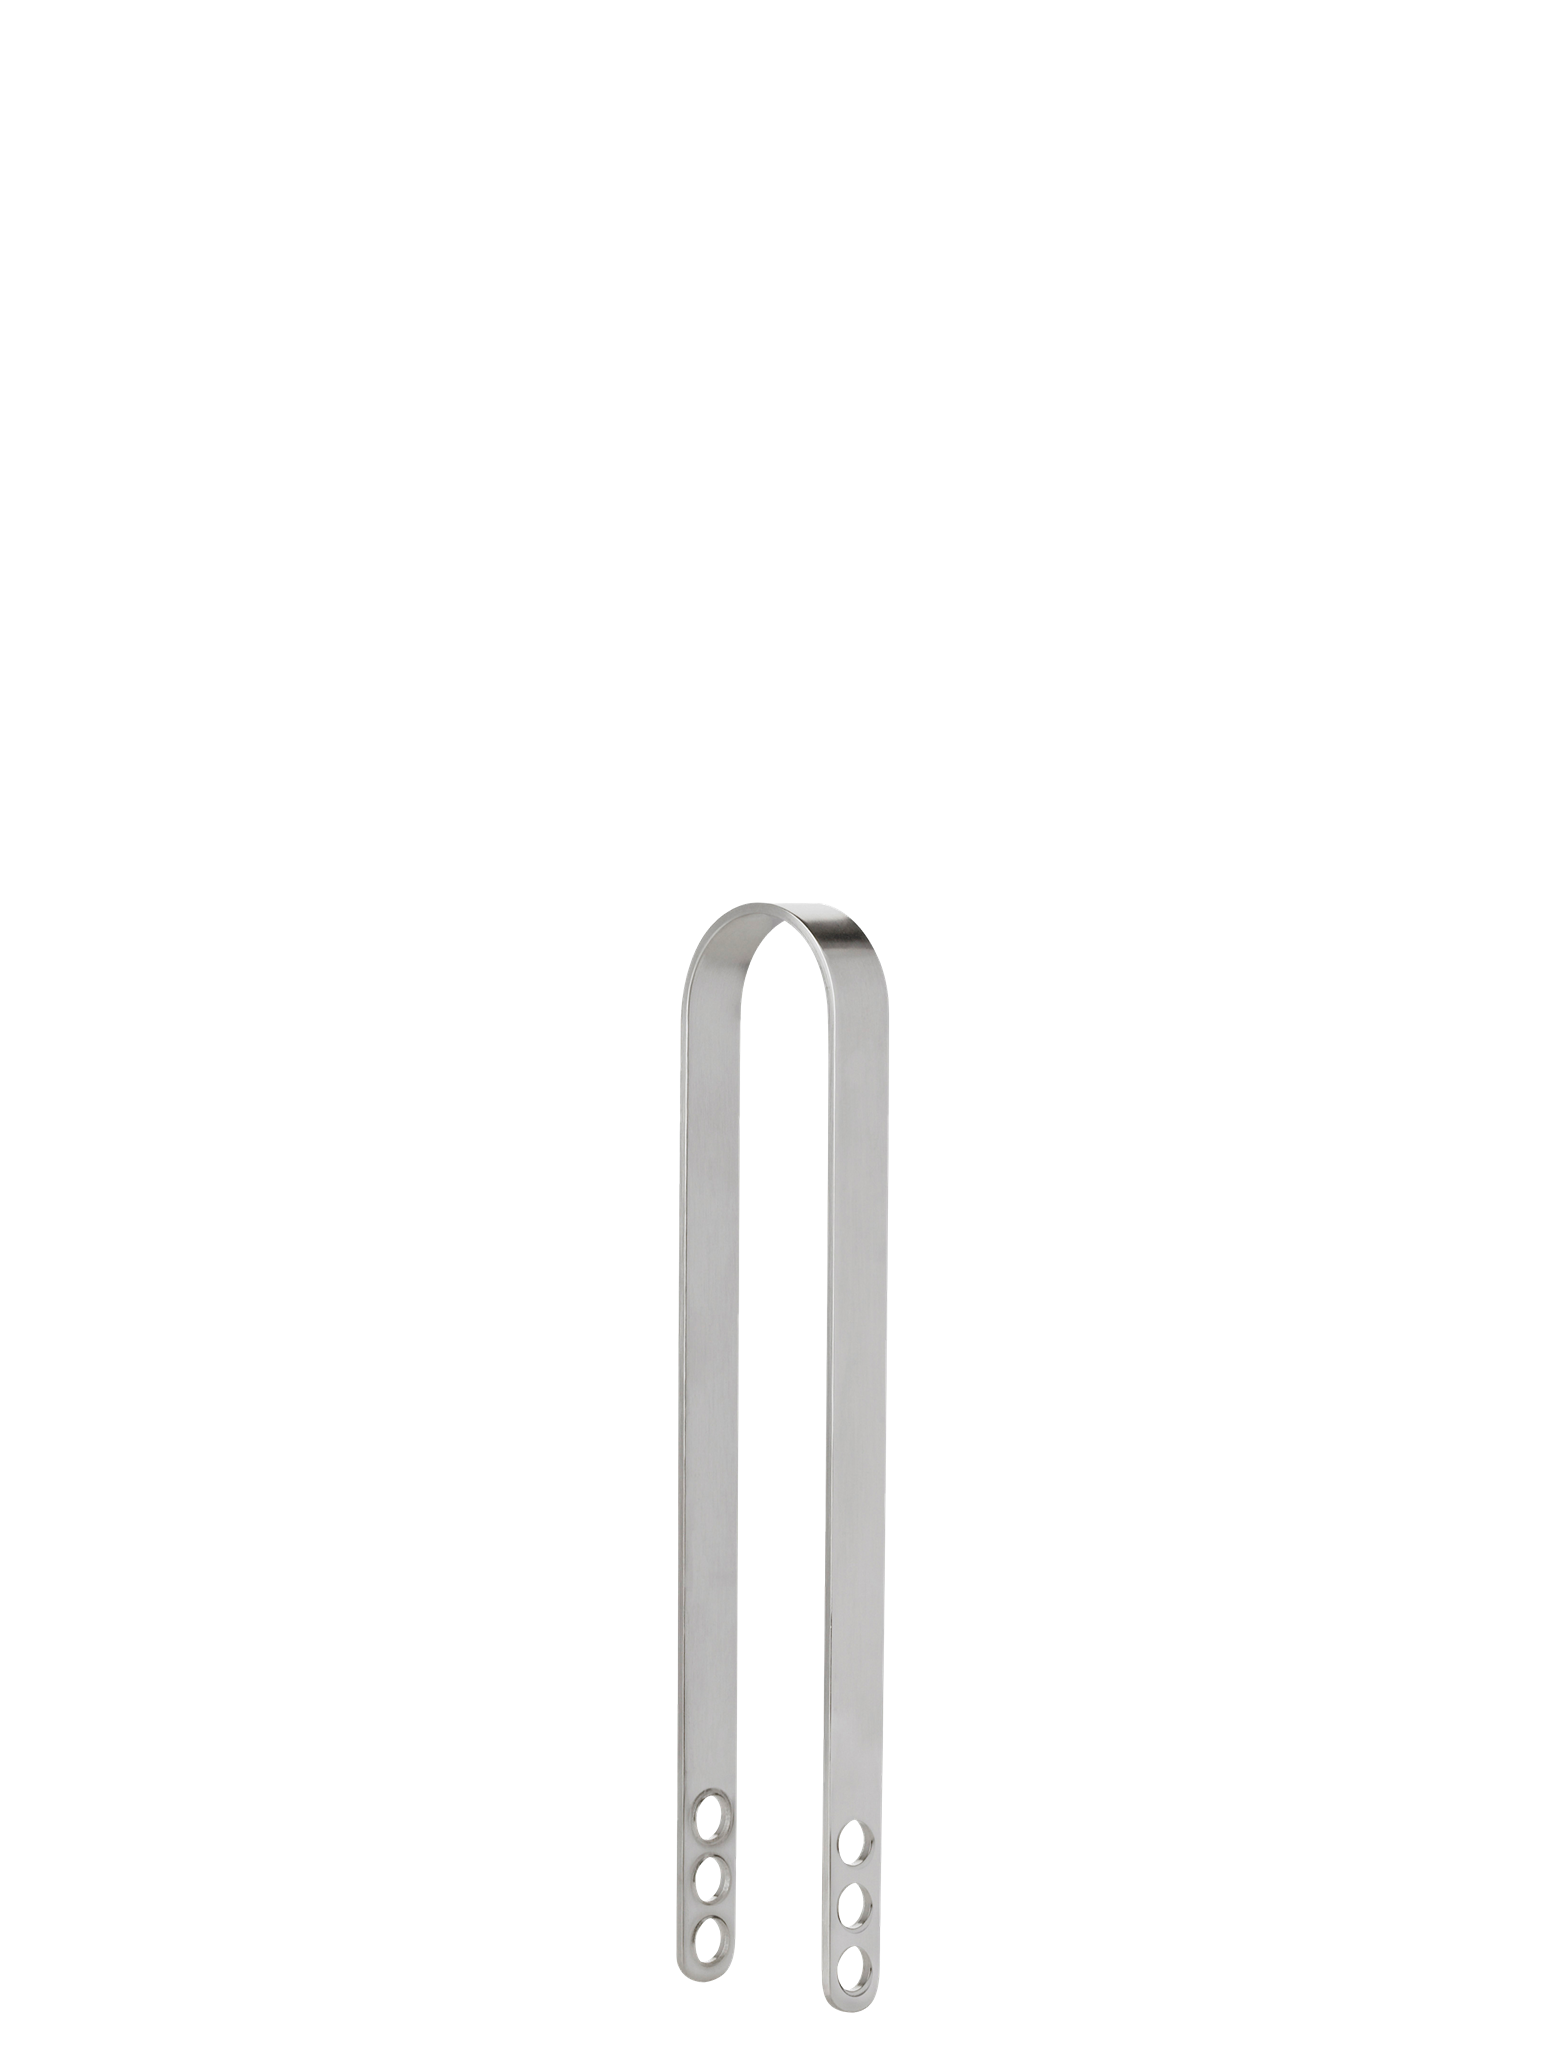 Stelton - Arne Jacobsen ice bucket 84.5 oz